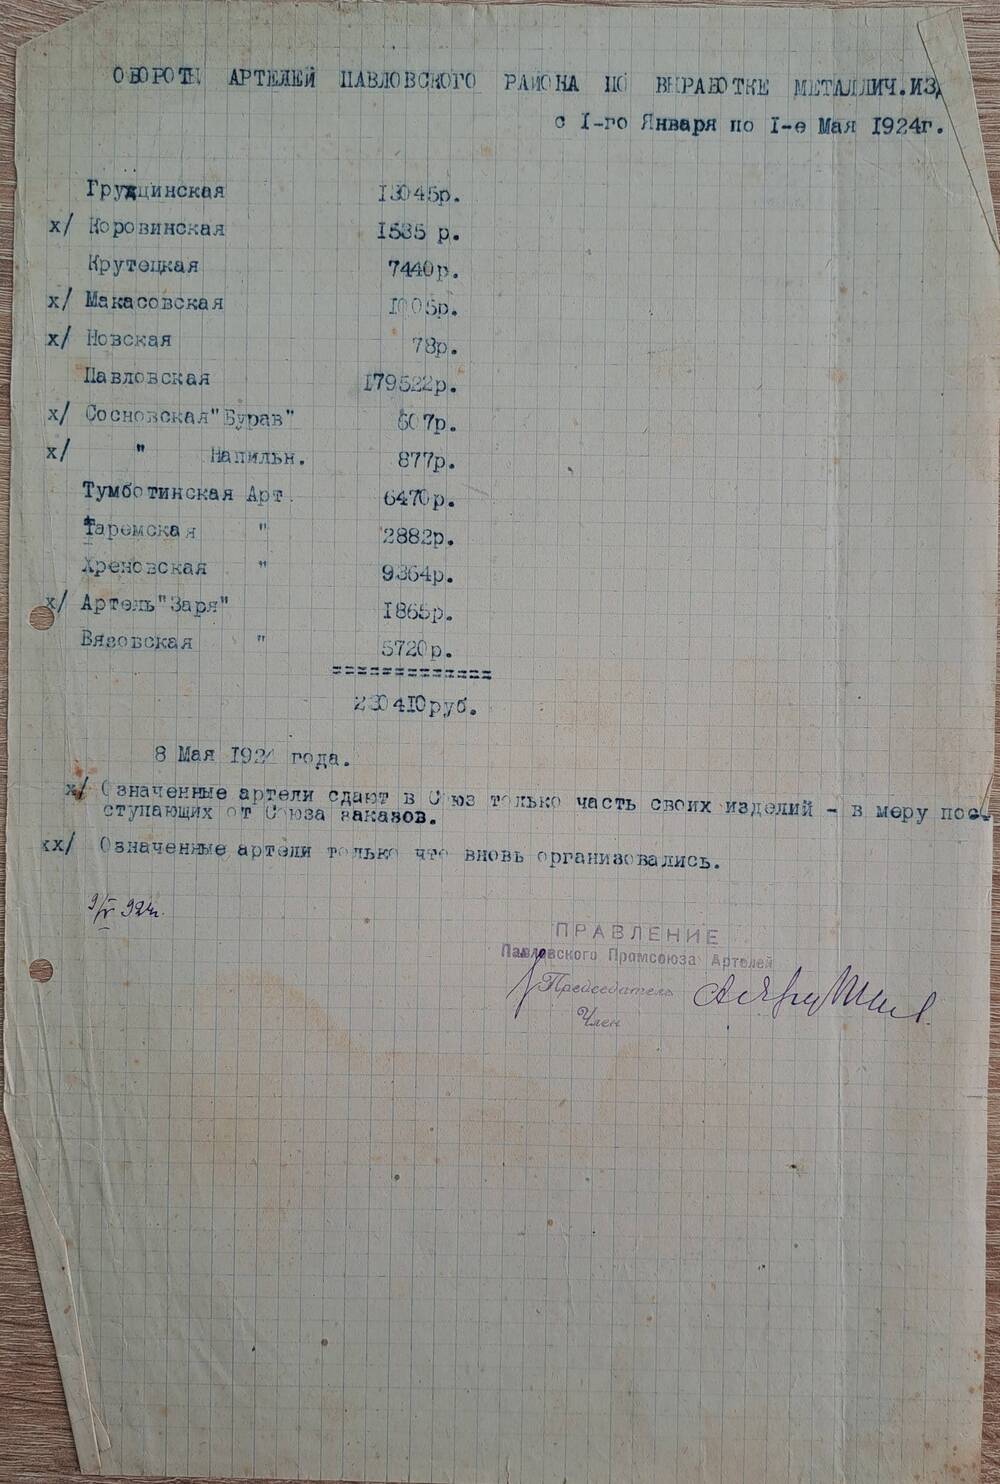 Обороты артелей Павловского района по выработке металлических изделий с 1 января по 1 мая 1924 г.